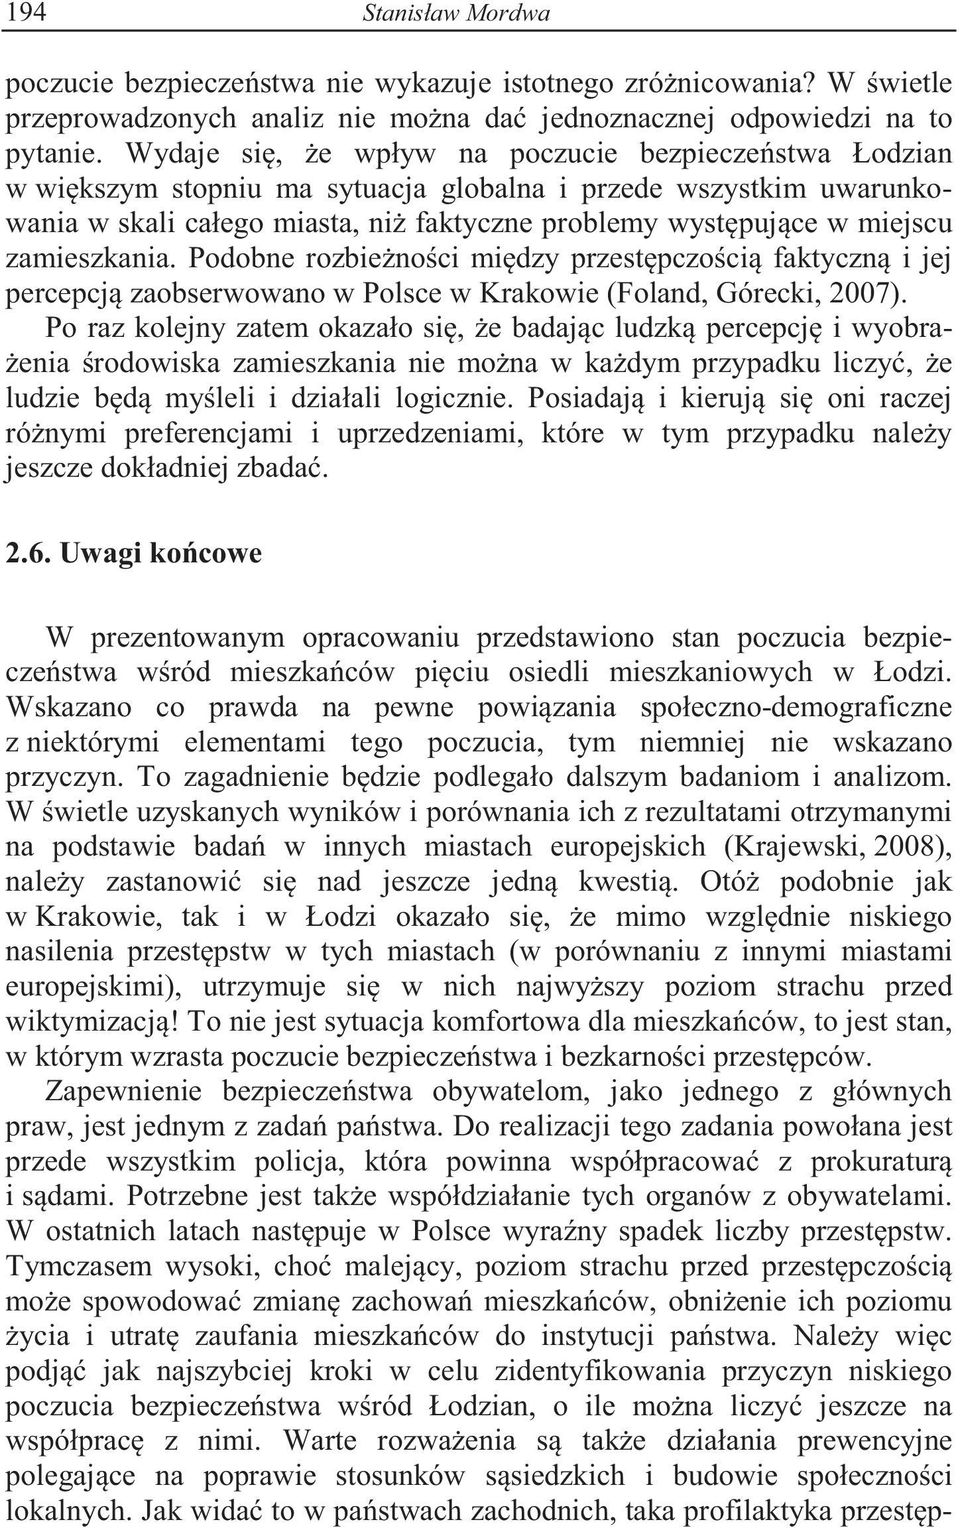 zamieszkania. Podobne rozbie no ci mi dzy przest pczo ci faktyczn i jej percepcj zaobserwowano w Polsce w Krakowie (Foland, Górecki, 2007).